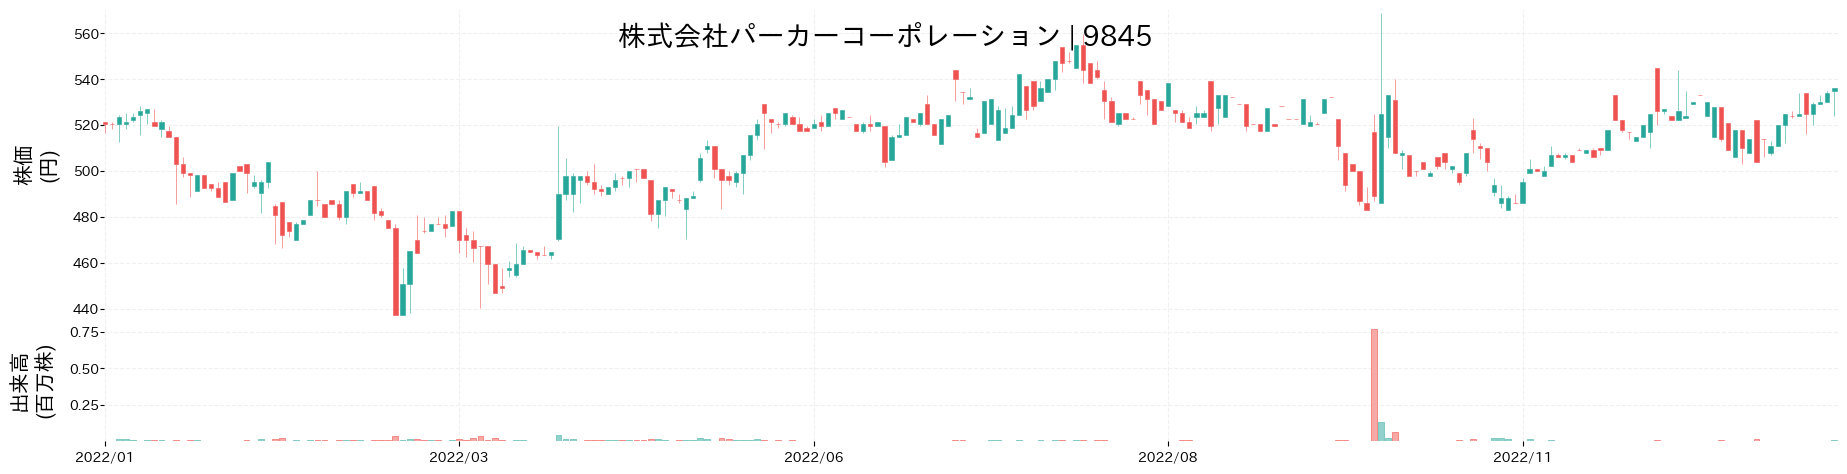 パーカーコーポレーションの株価推移(2022)